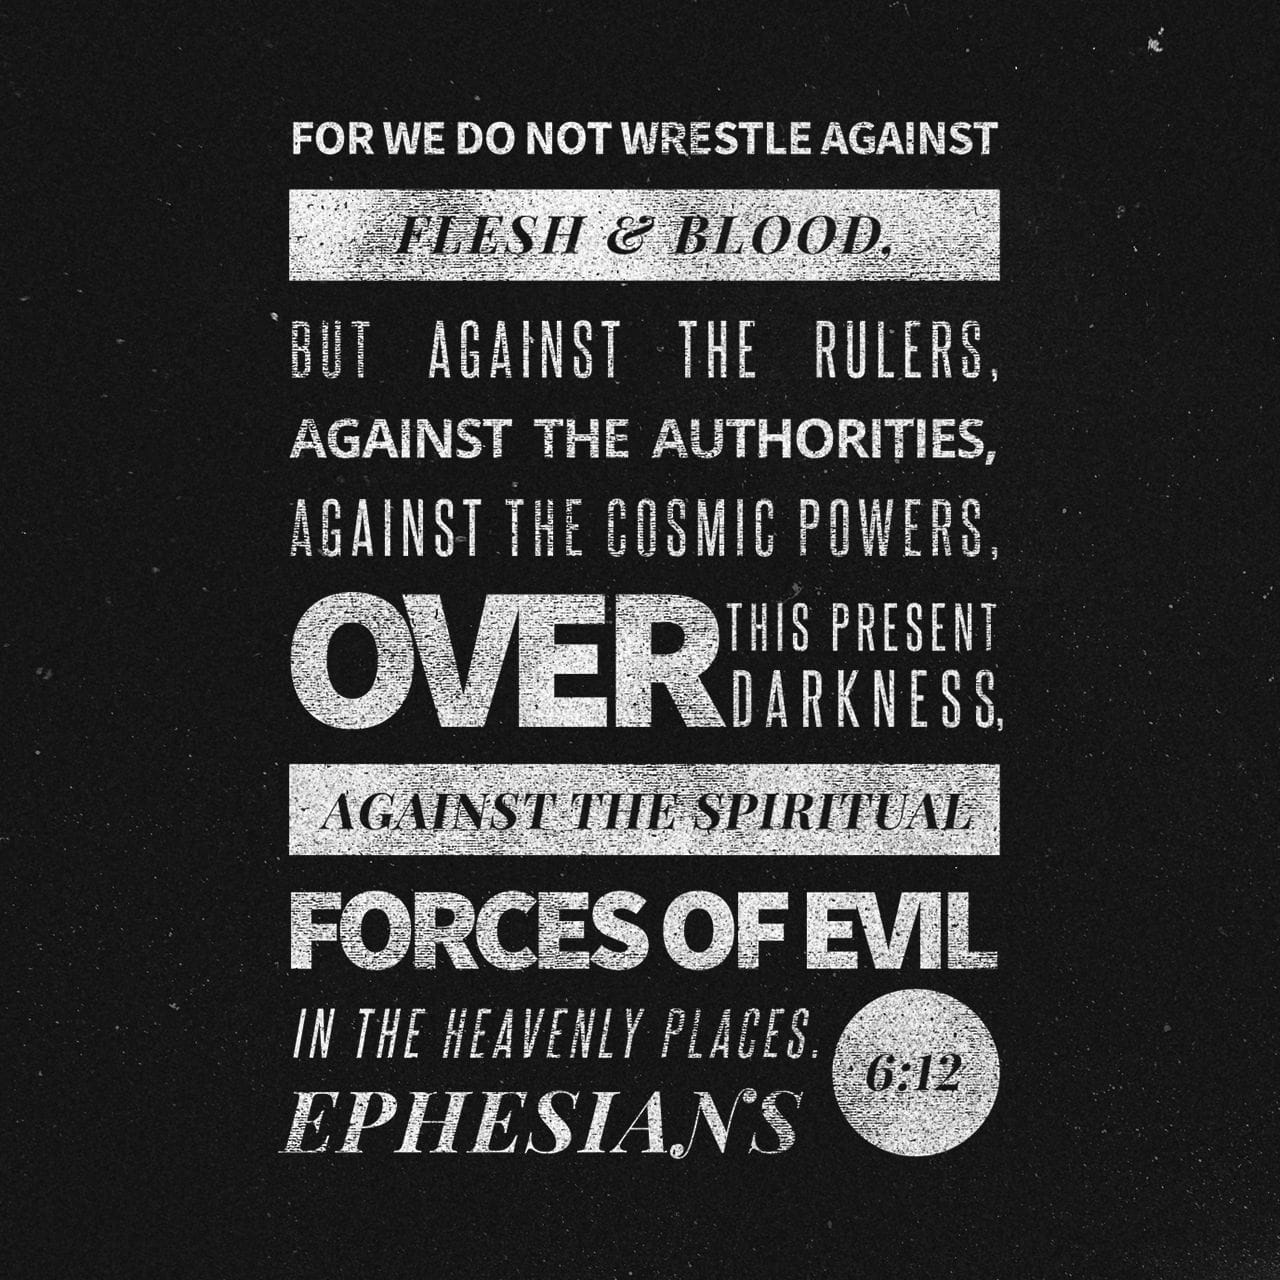 Ephesians 6:12